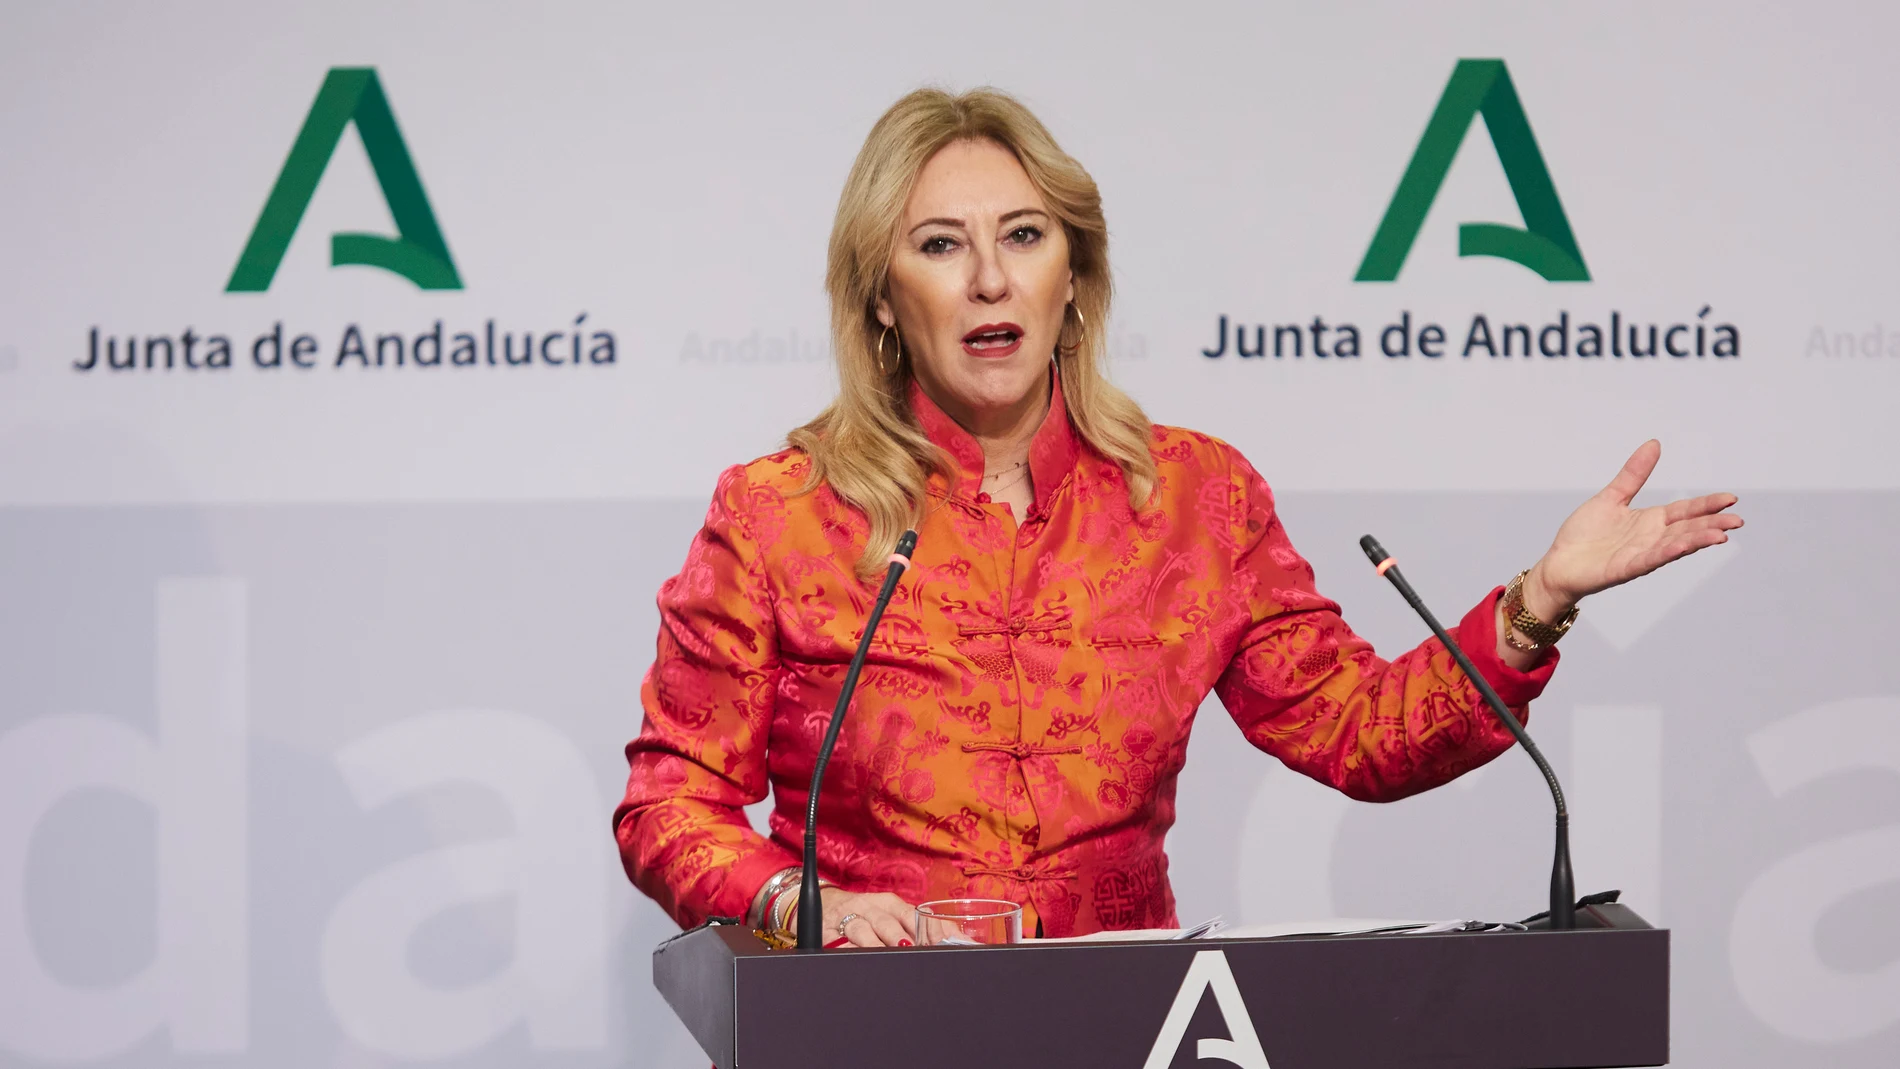 La consejera de Economía y Hacienda de la Junta de Andalucía, Carolina España